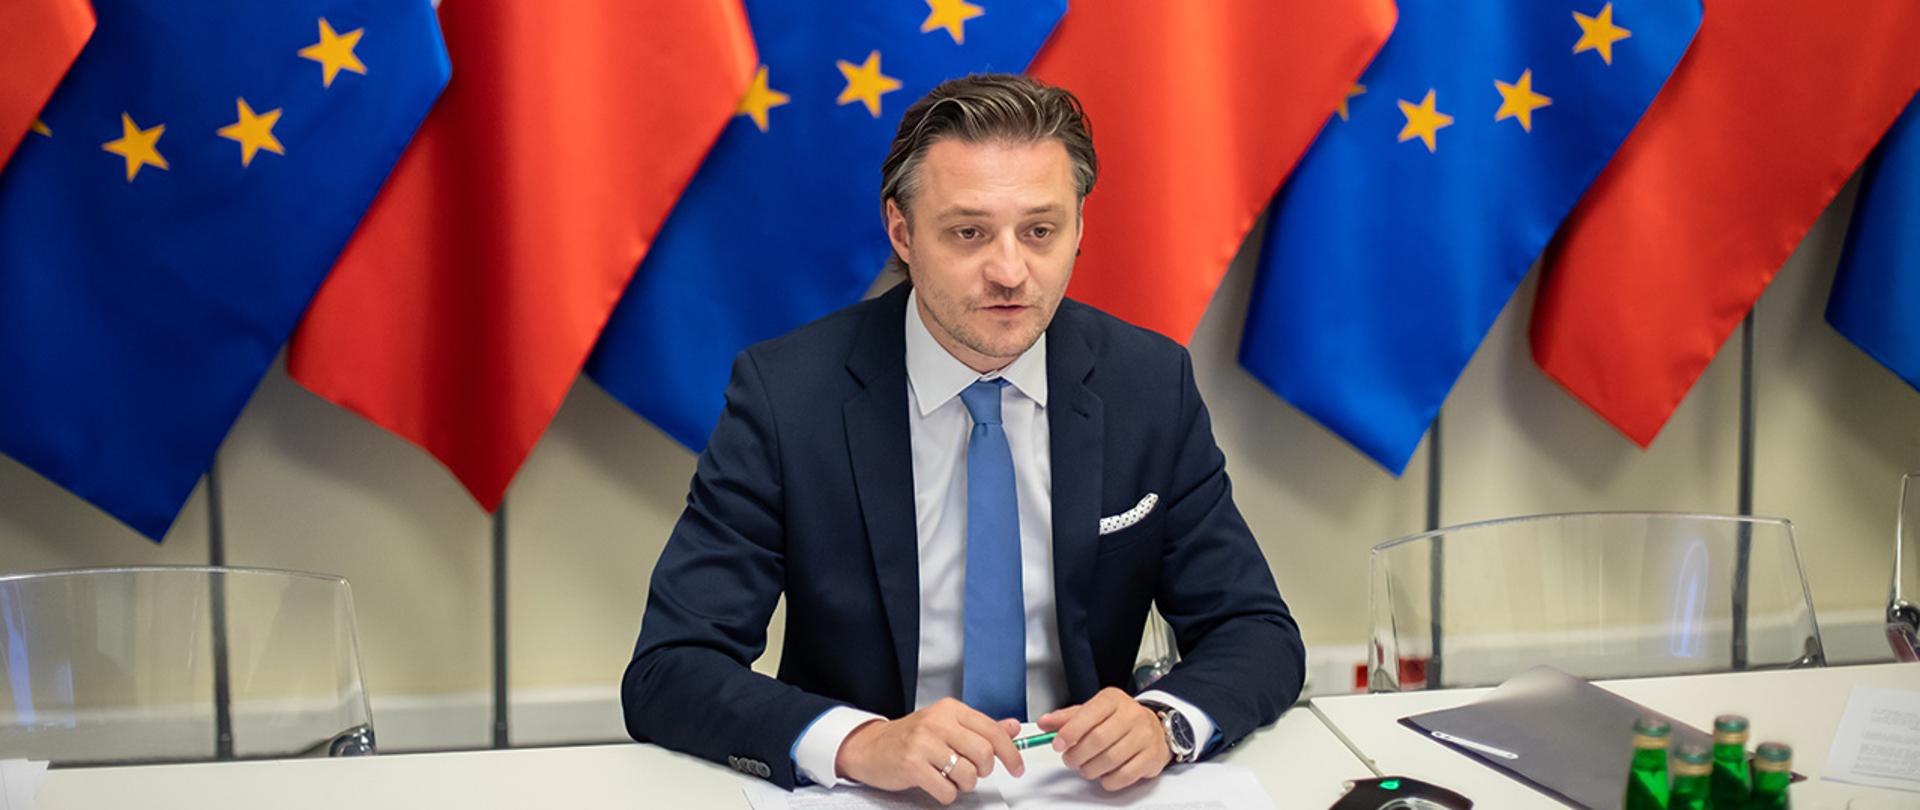 Na zdjęciu widać wiceministra Bartosza Grodeckiego siedzącego za stołem w trakcie wideokonferencji. W tle widać rząd flag Polski i UE.